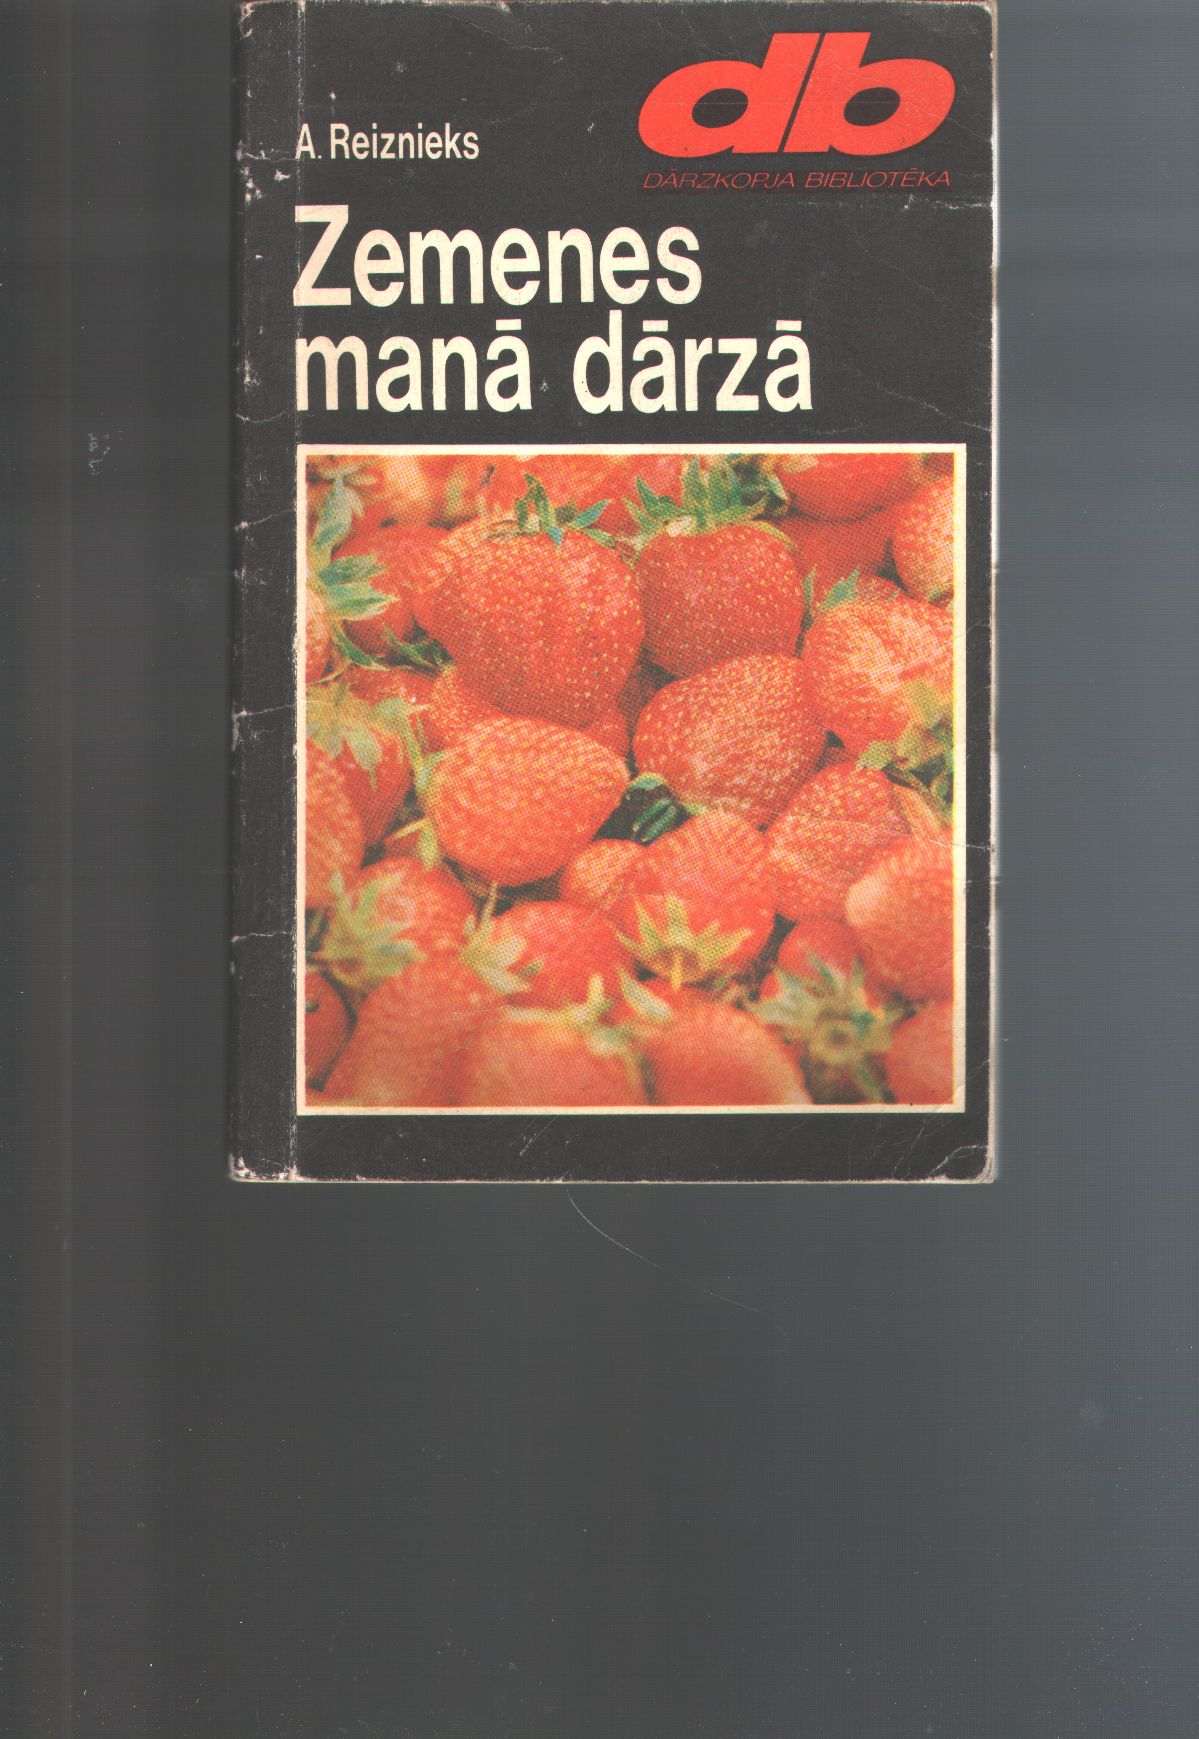 Reiznieks  Zemenes mana darza (Erdbeeren in meinem Garten lettischsprachiges Buch über Erdbeerenanbau) 